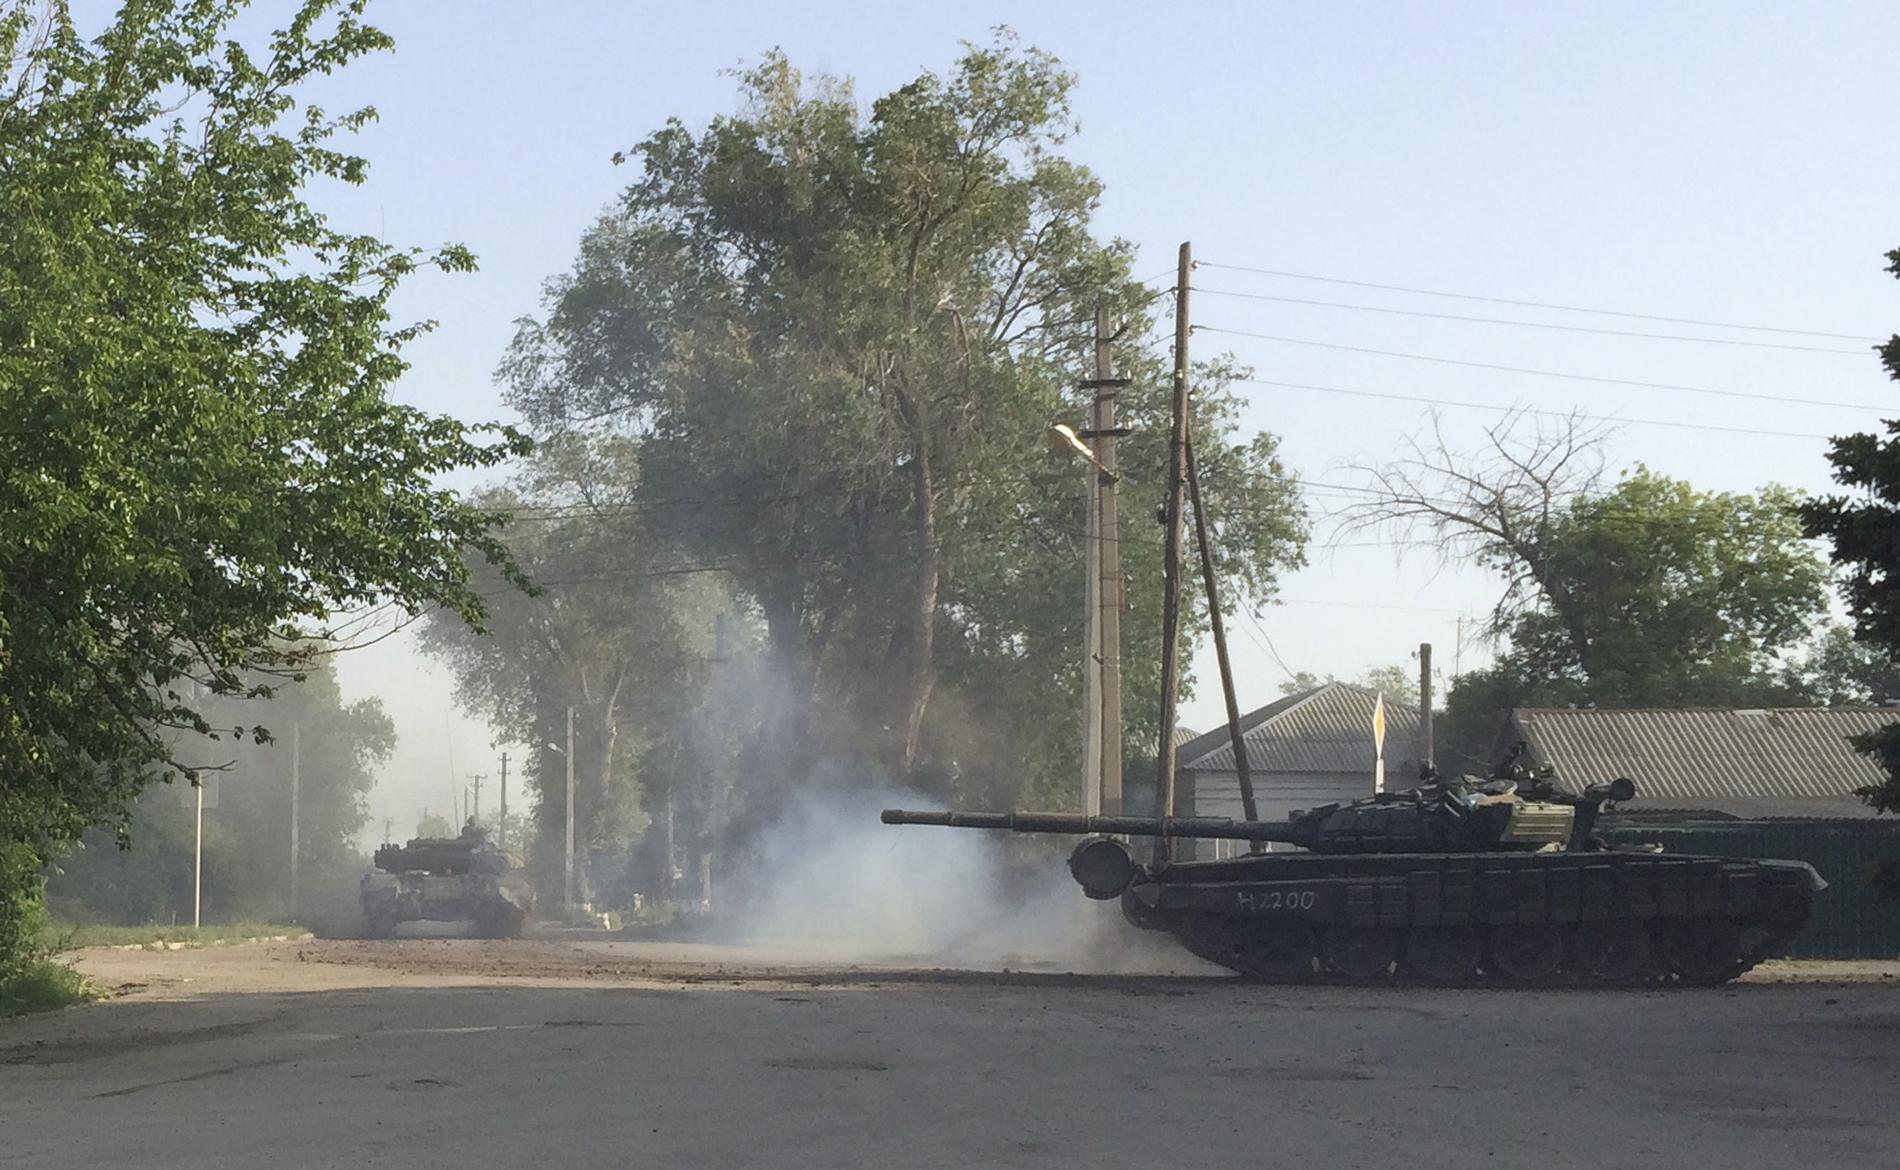 Rysk upprustning med bland annat stridsvagnar pågår nära den ukrainska gränsen, rapporterar Reuters.